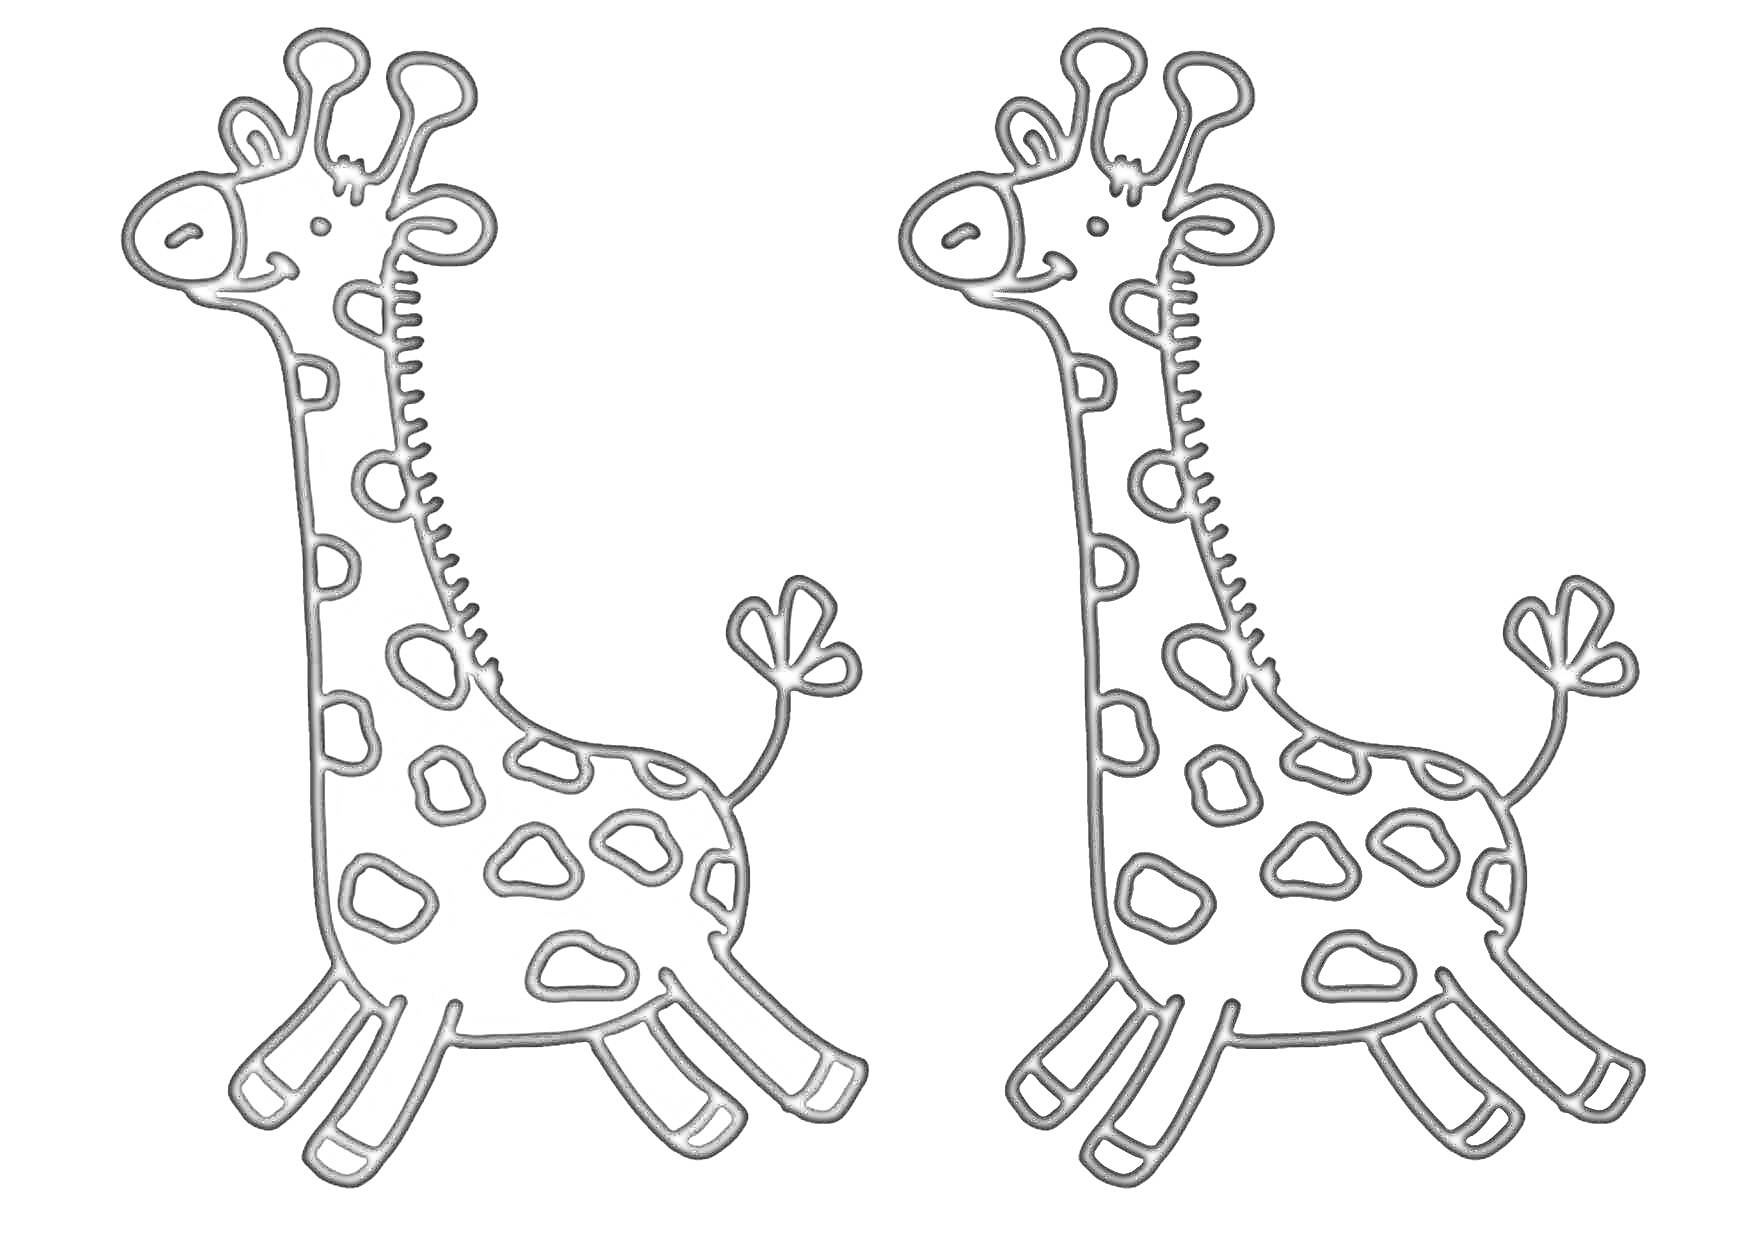 Две жирафы - одна цветная, другая черно-белая для раскрашивания